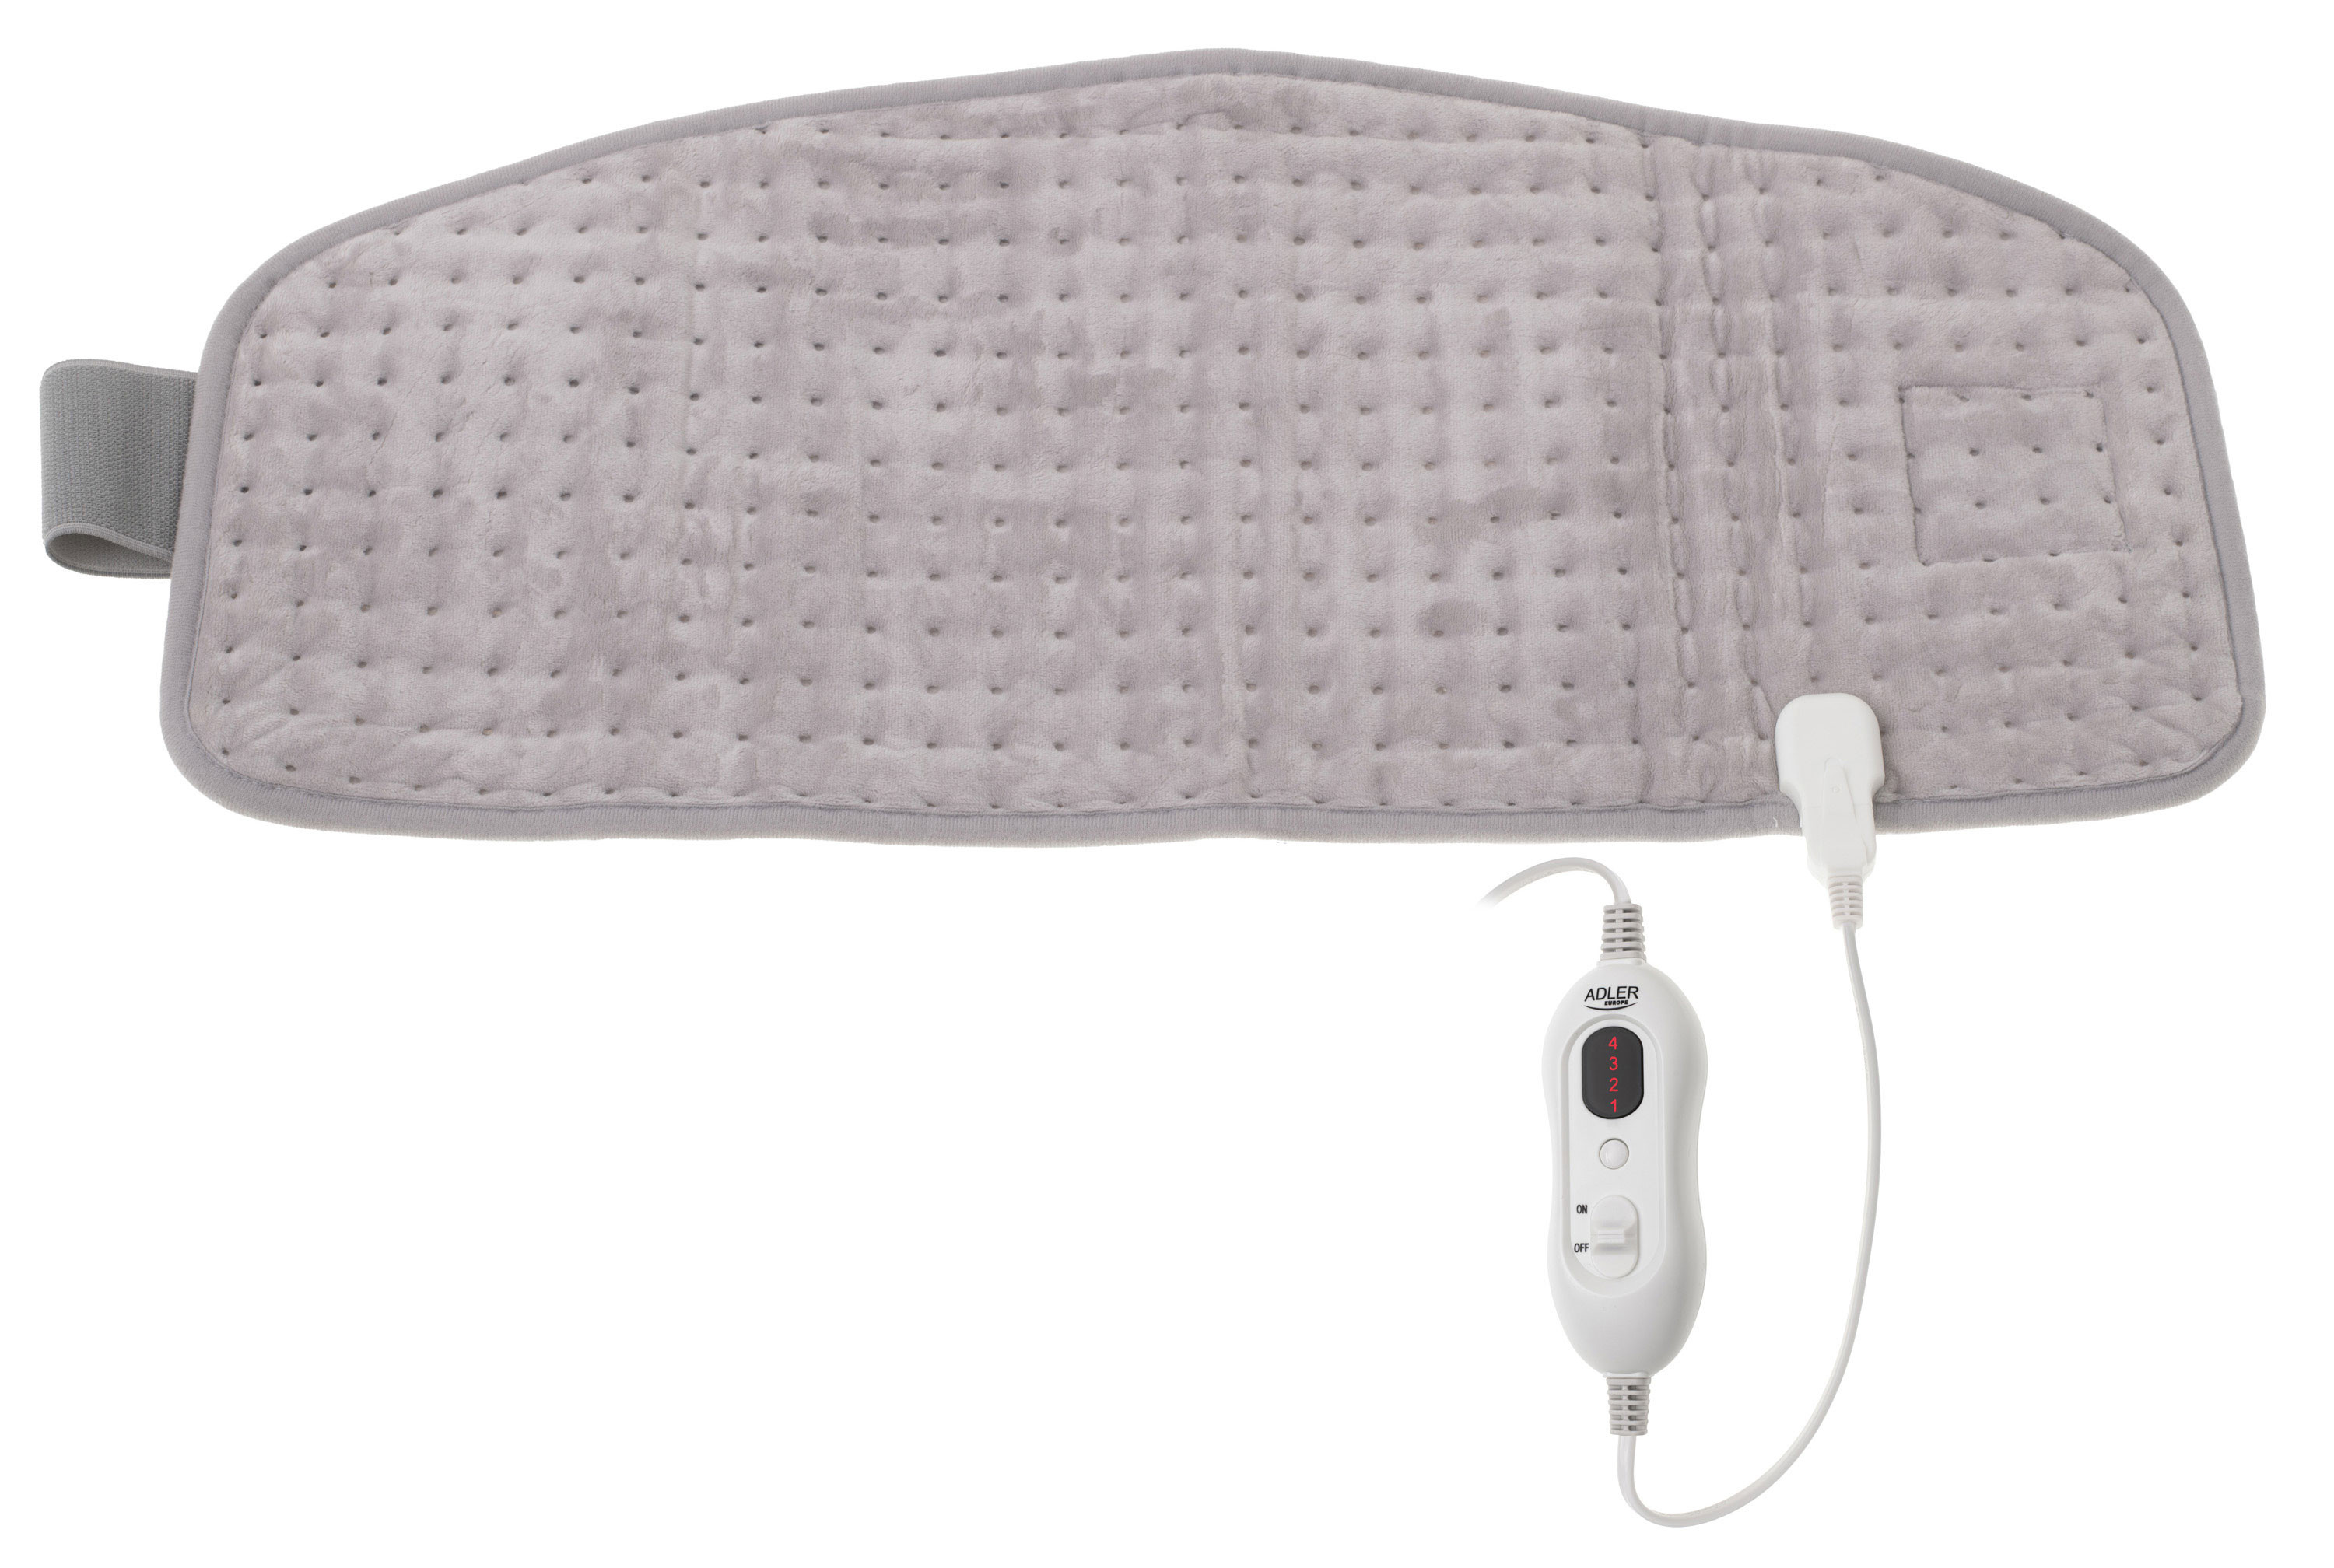 Manta térmica, almohadilla térmica suave, manta eléctrica con temporizador  para el dolor de espalda, alivio del dolor muscular, apagado automático